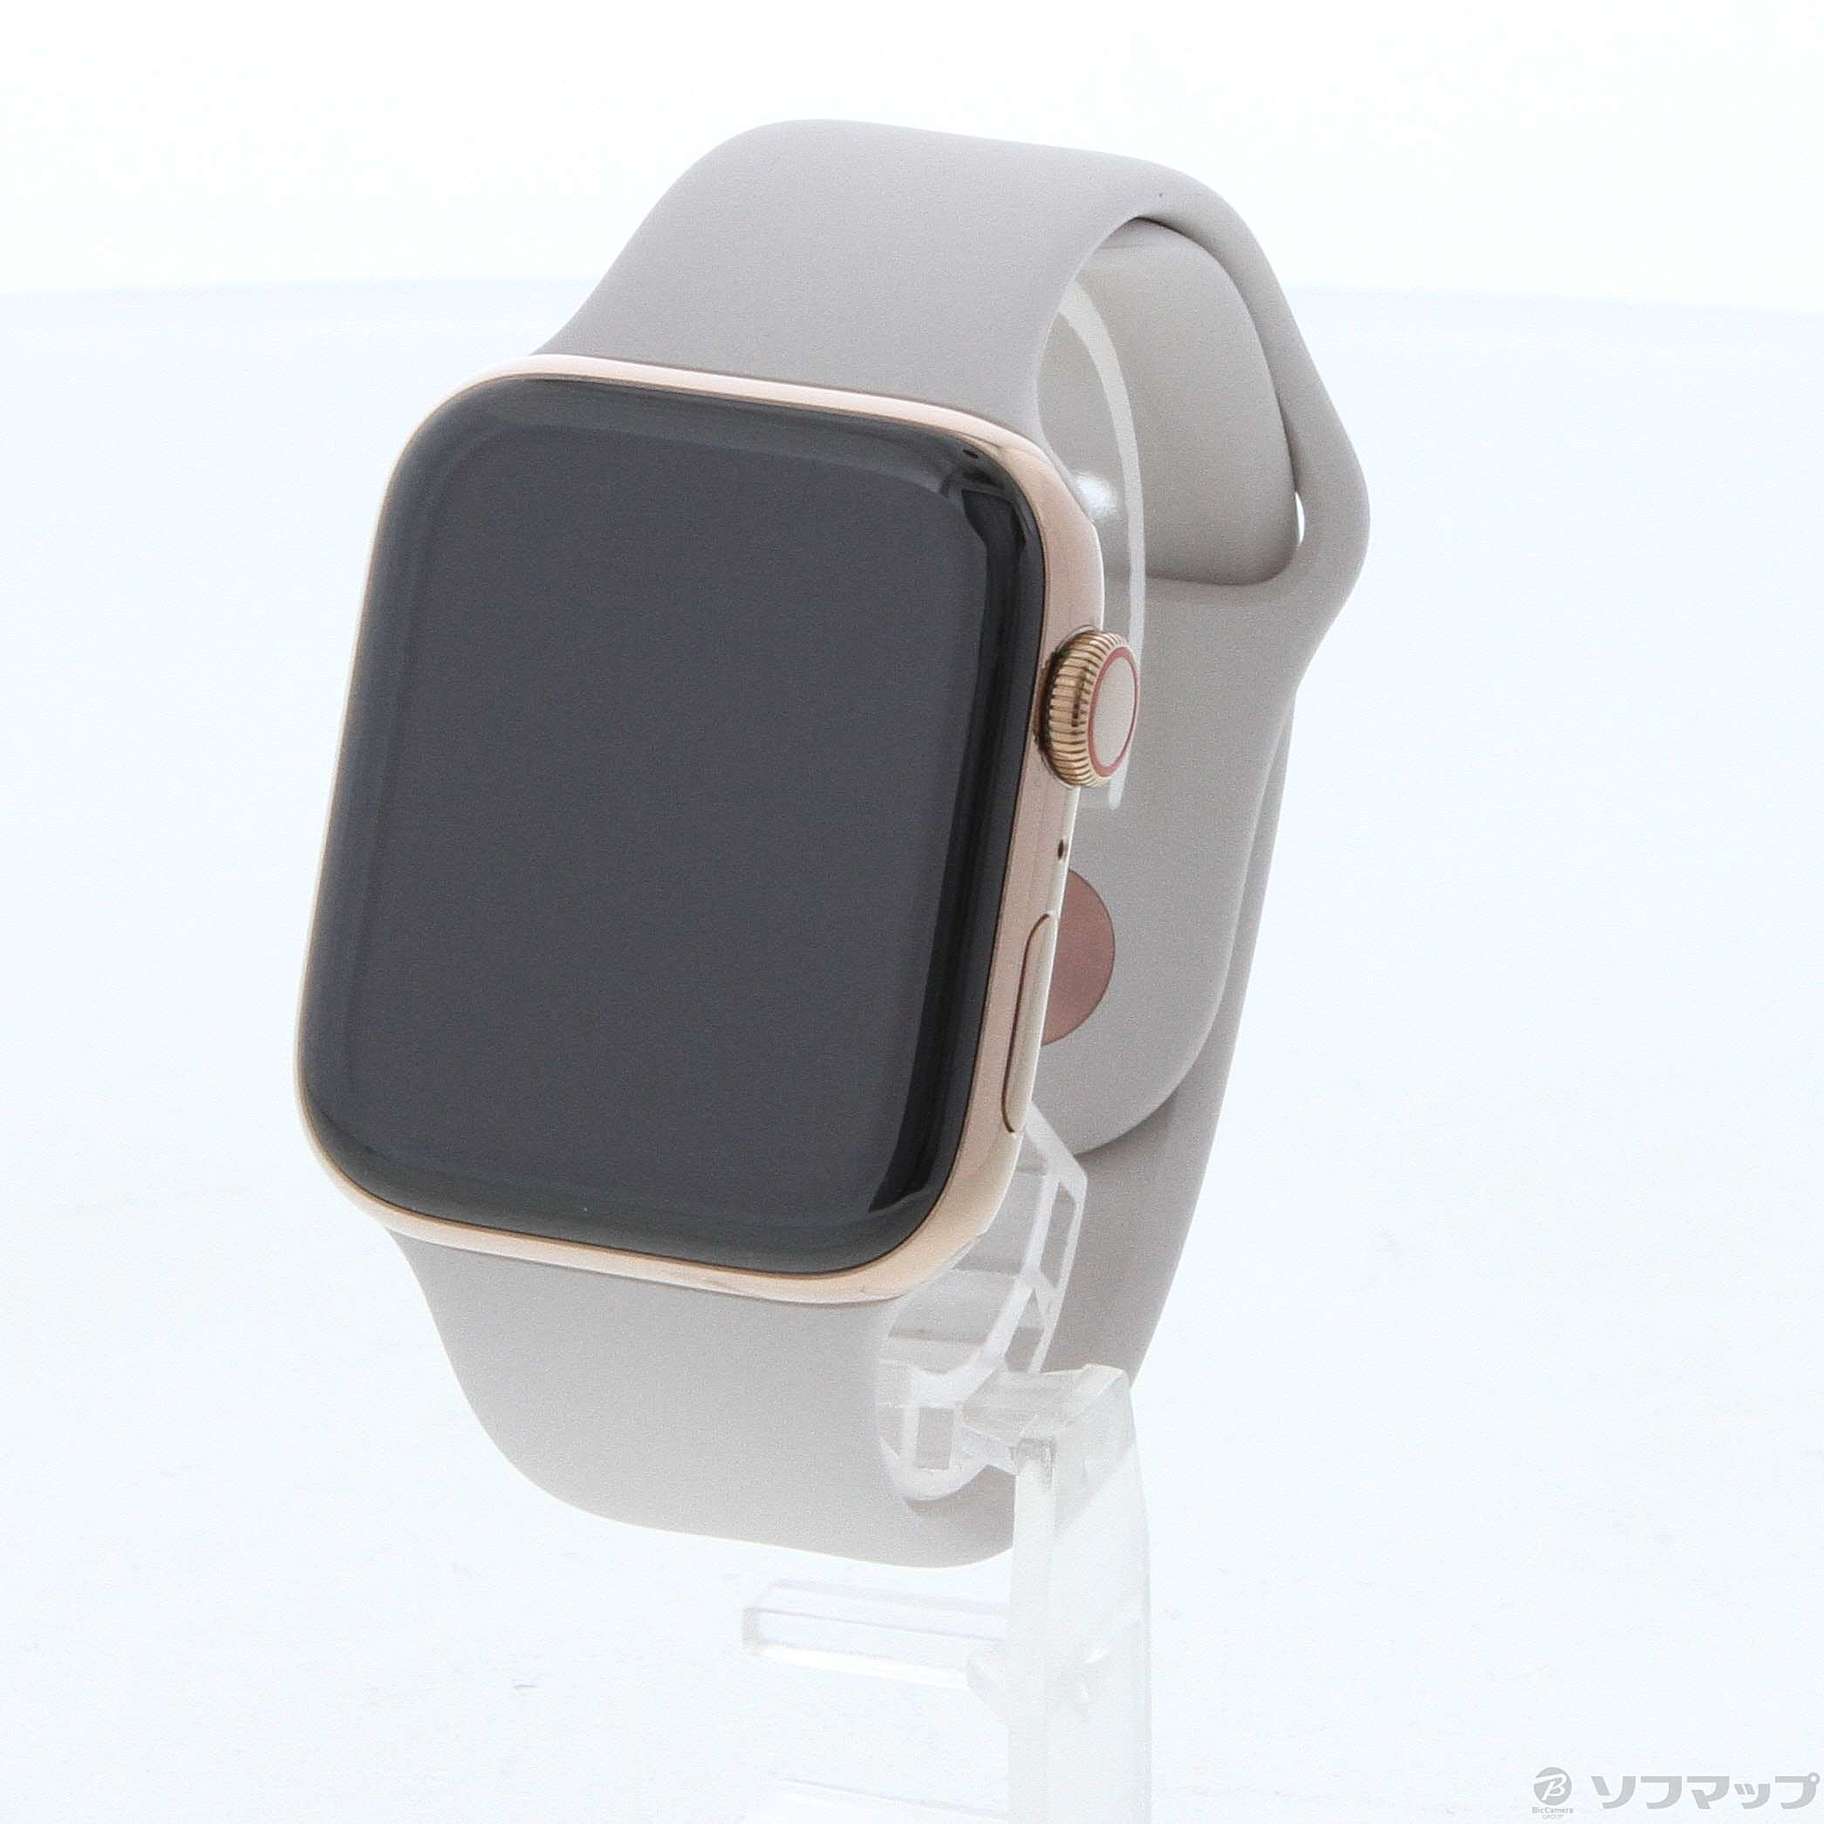 中古】セール対象品 Apple Watch Series 4 GPS + Cellular 44mm